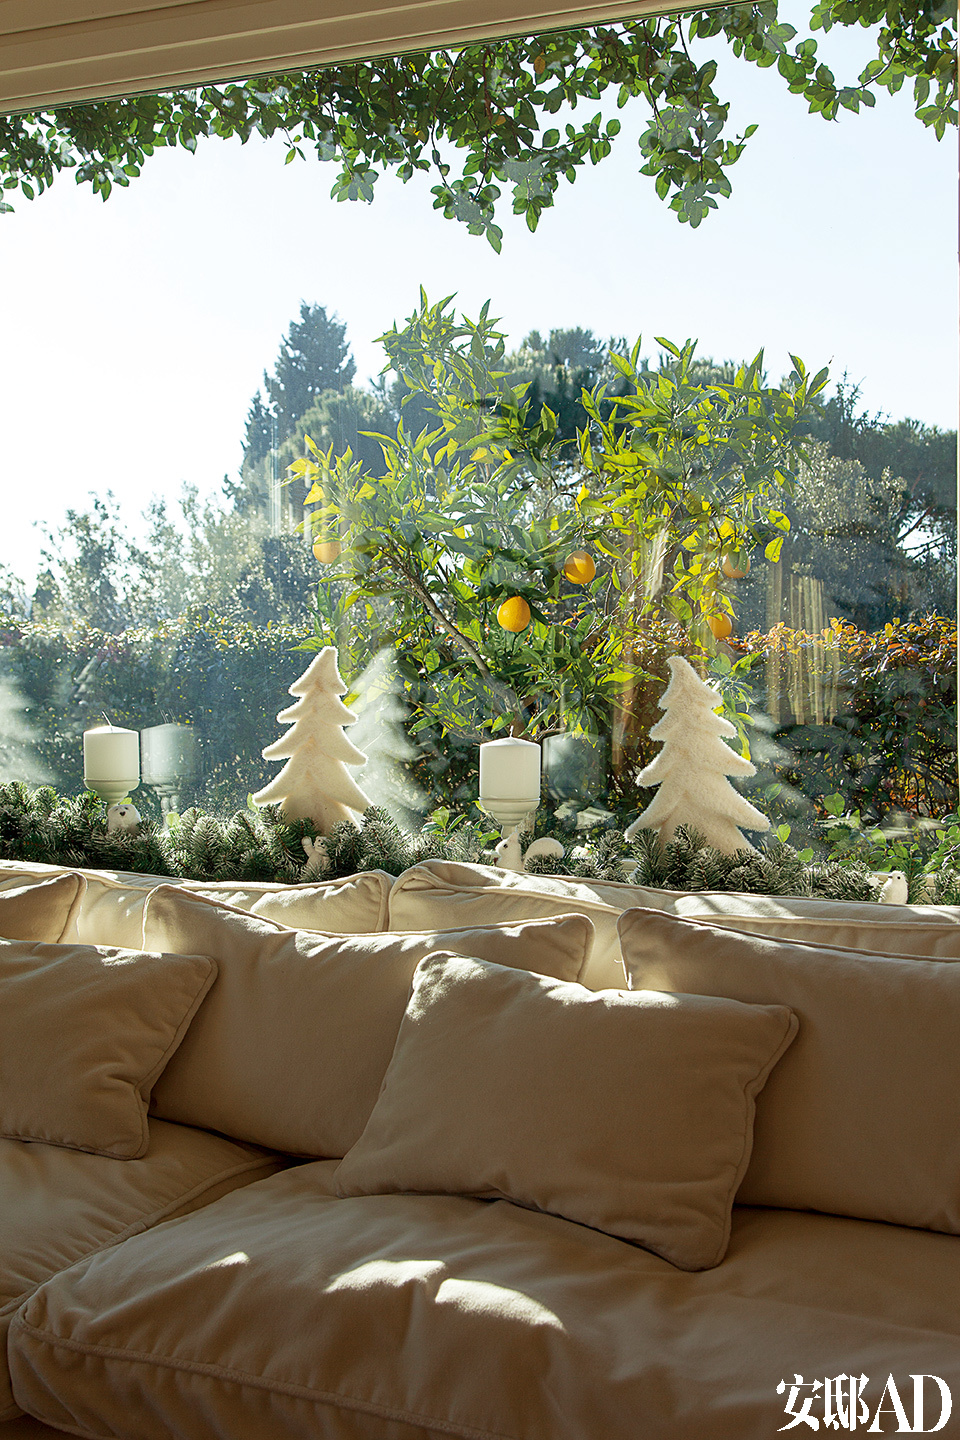 从起居室的窗户望出去，环绕整个公寓的大阳台花园中一片碧绿。黄澄澄的果实为室内纯白的圣诞装饰调入一丝暖意与生机。